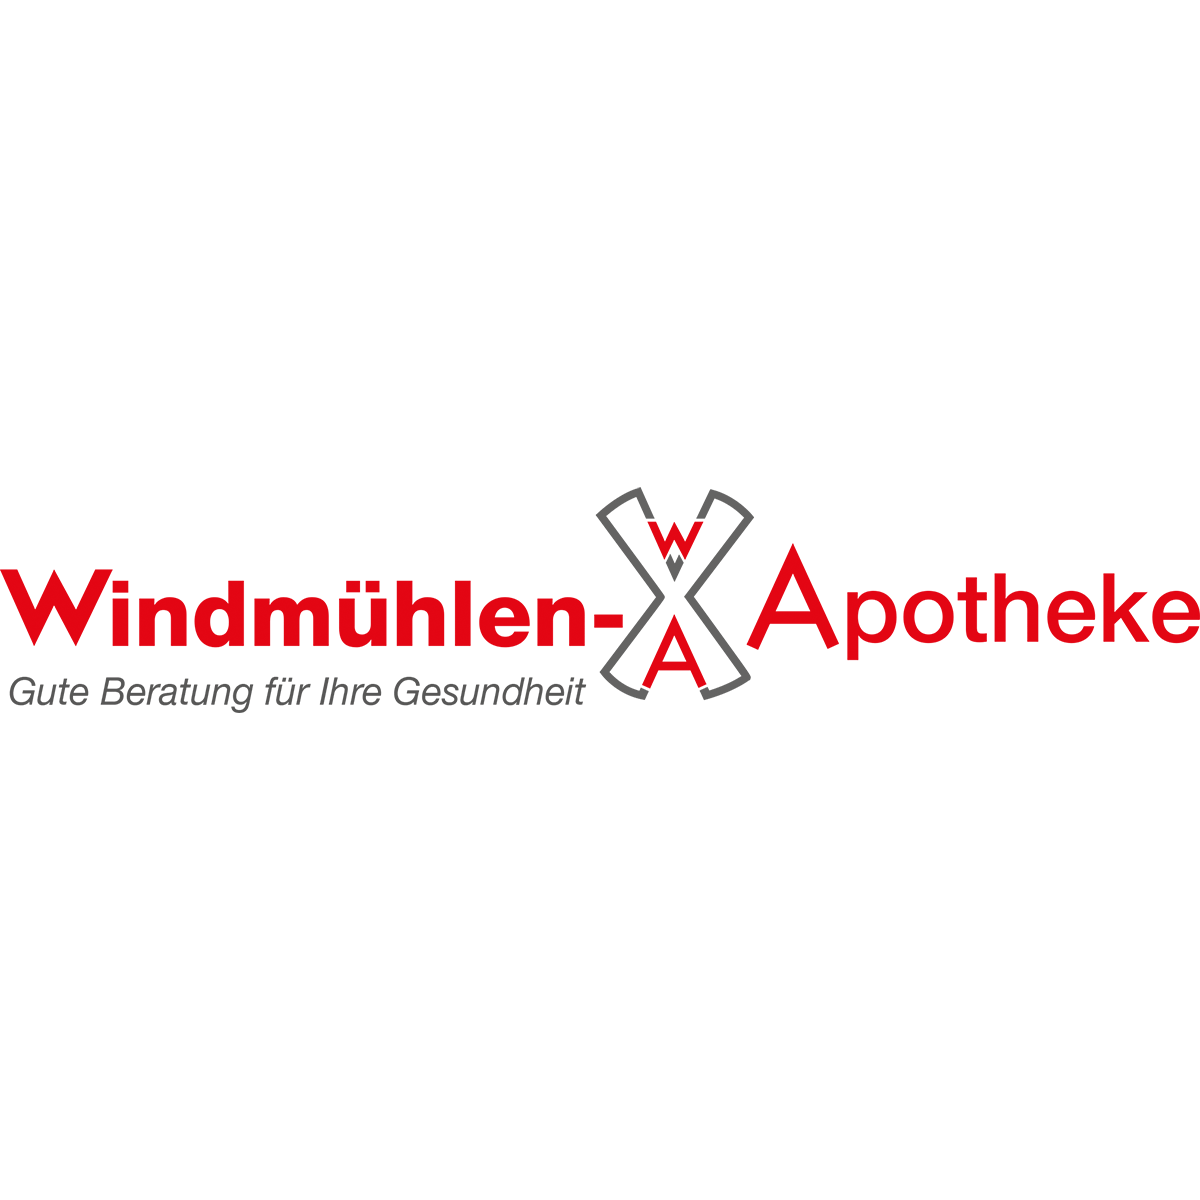 Windmühlen-Apotheke